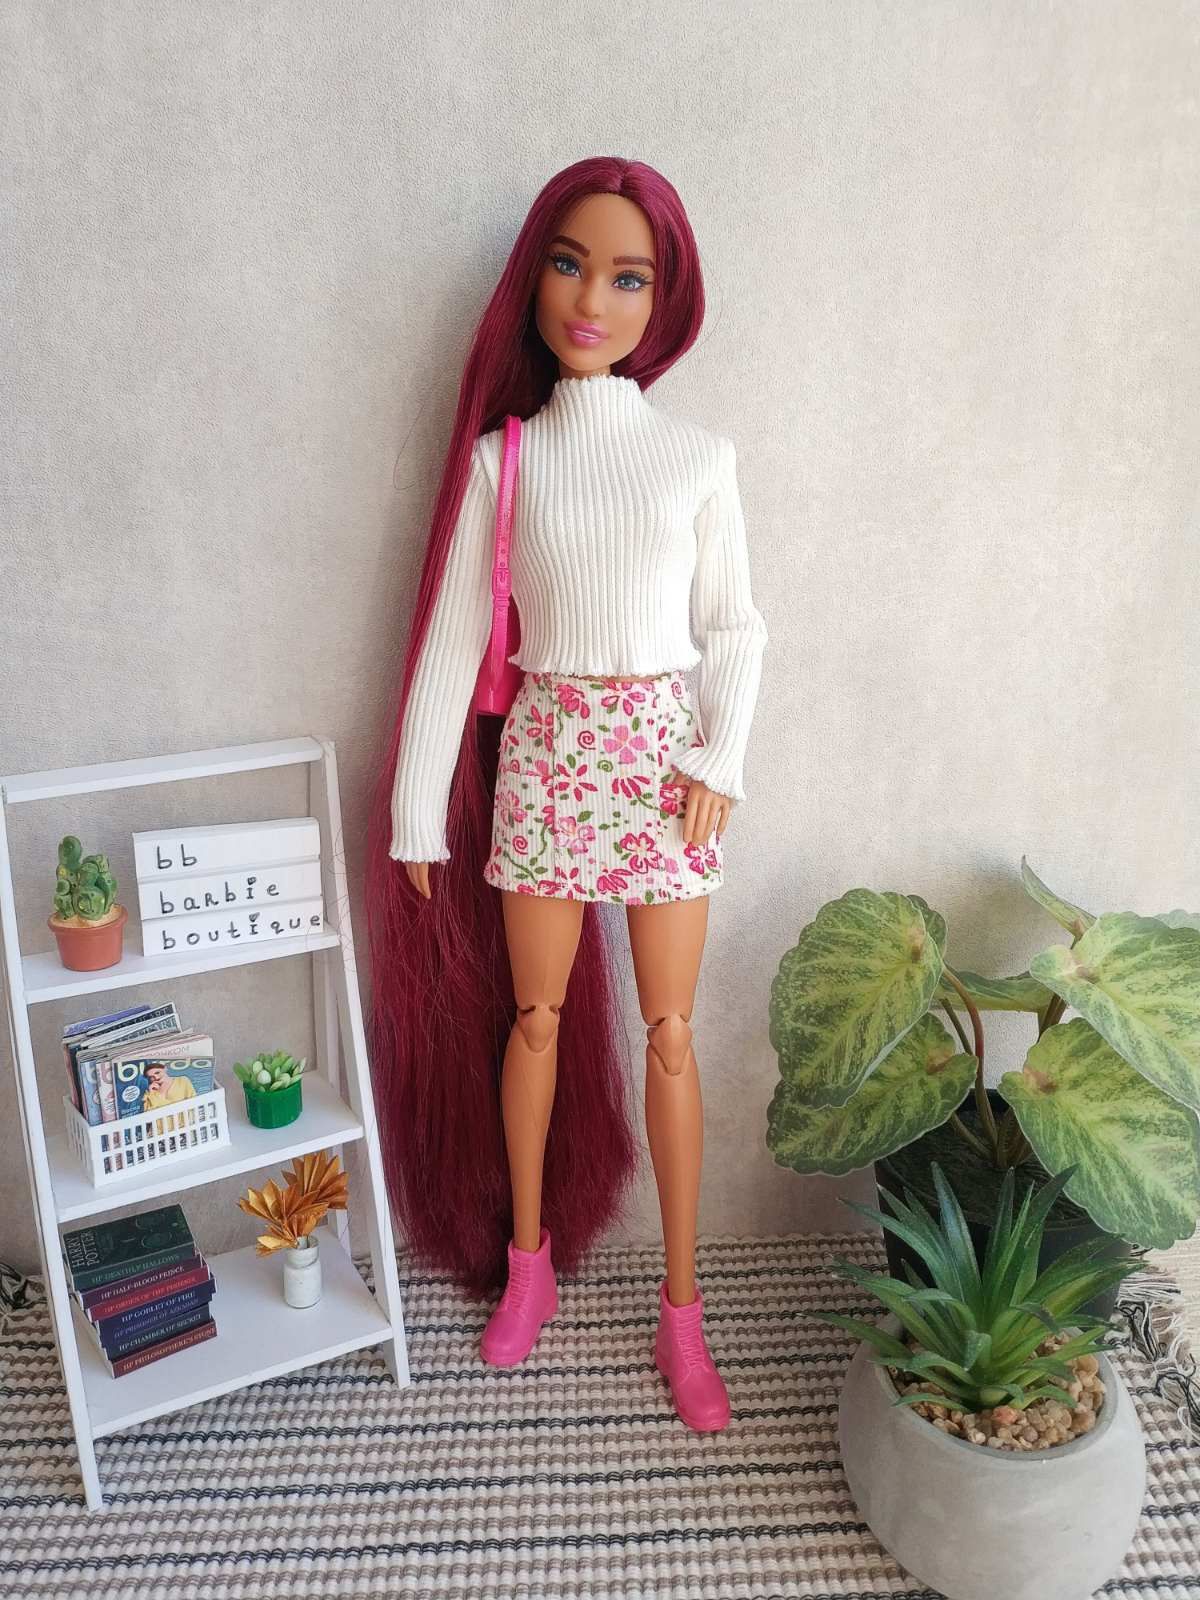 Одежда для Барби Barbie